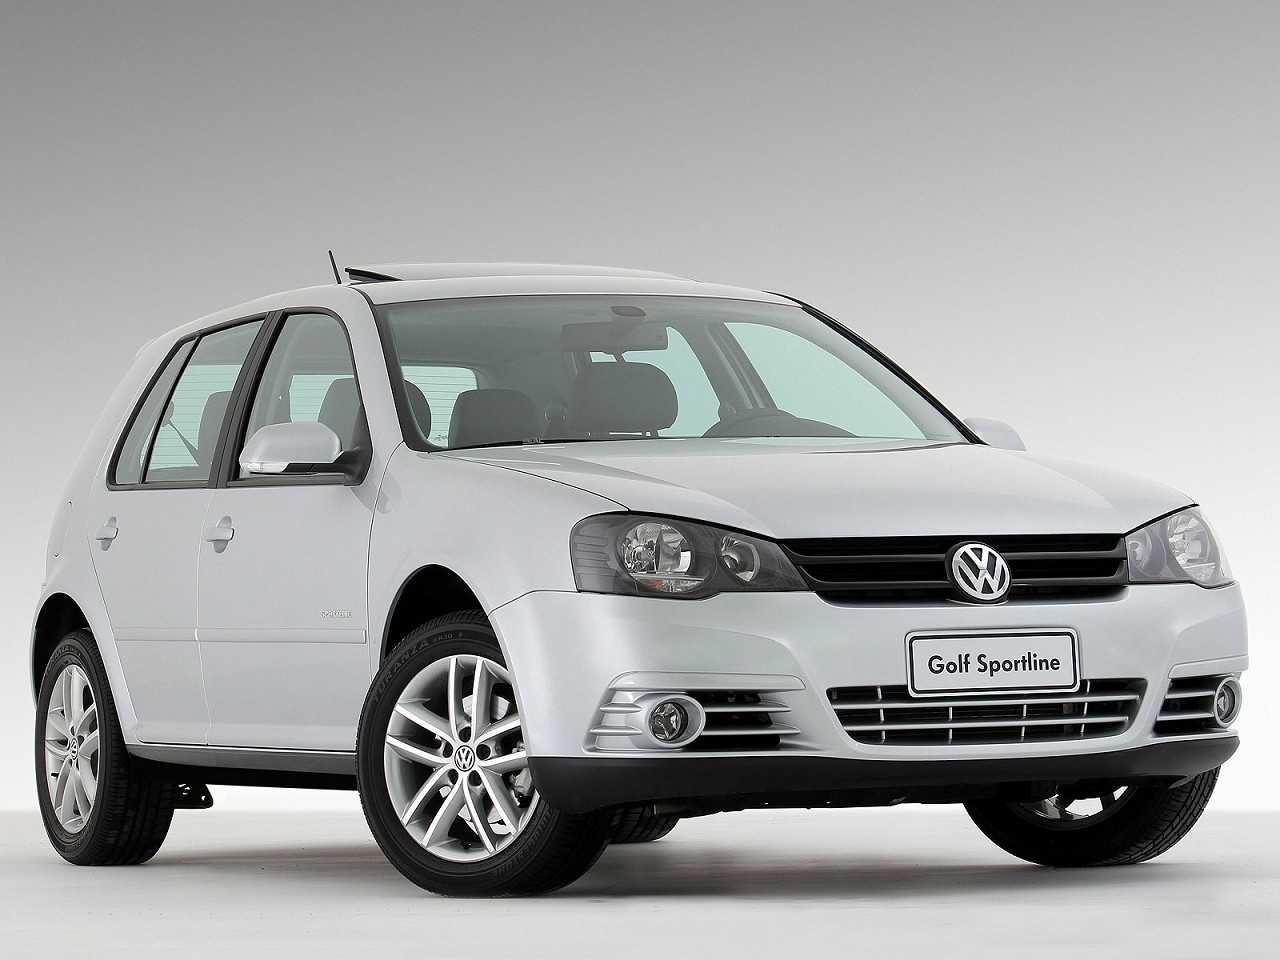 Entre dois hatches médios 2010: VW Golf ou Hyundai i30?